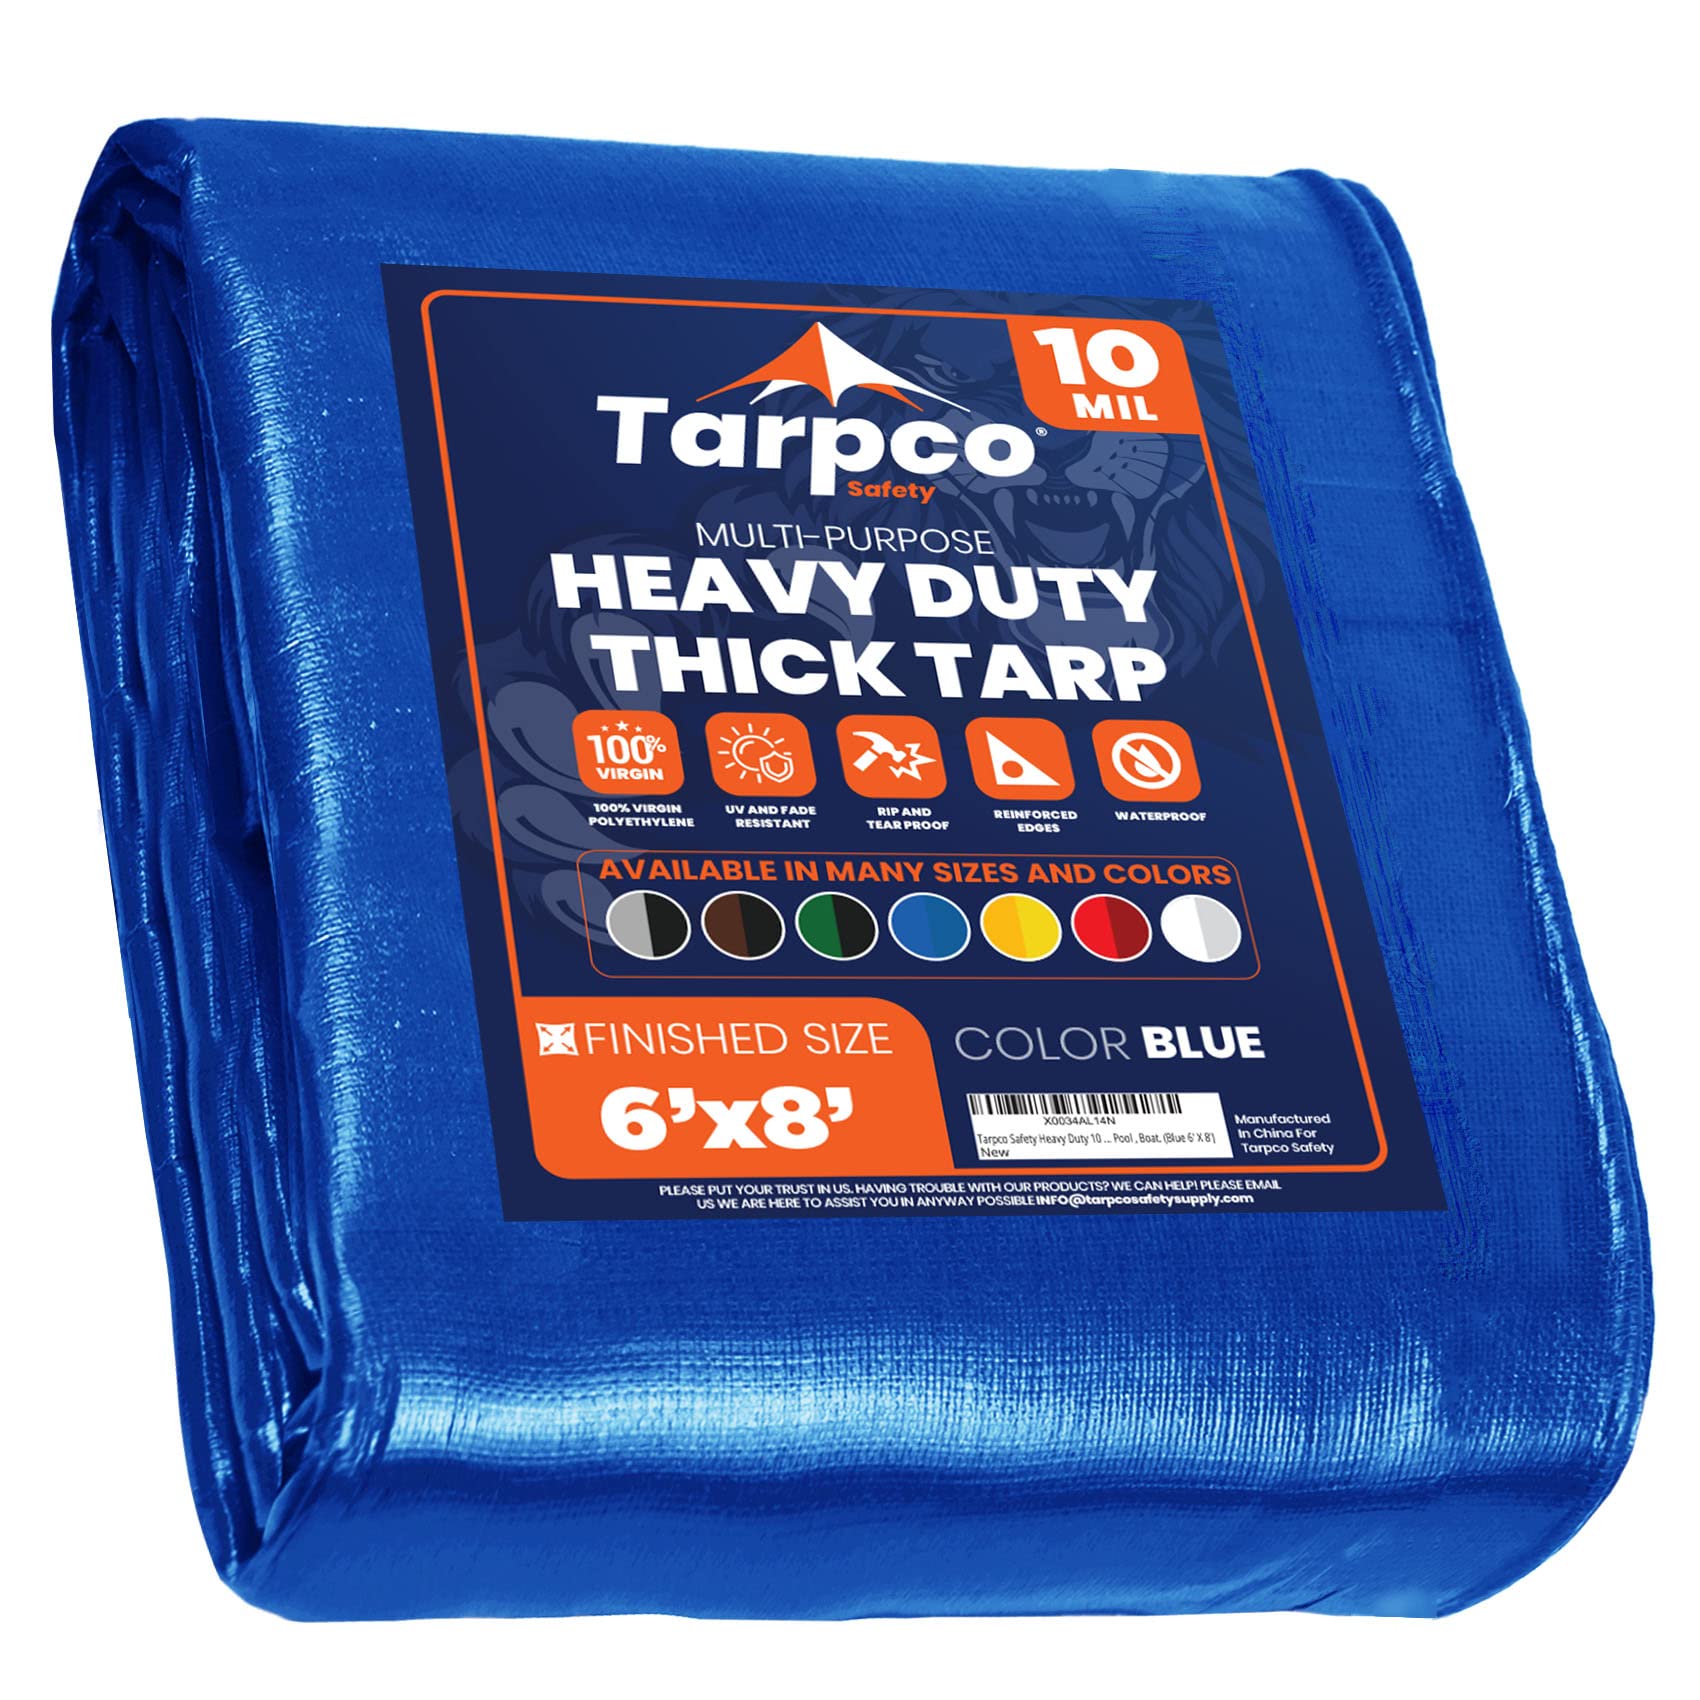 Tarpco Safety 重型防水布盖，防水、抗紫外线、防撕裂、边缘加固的聚乙烯防水布，适用于屋顶、露营、庭院、游泳池、船